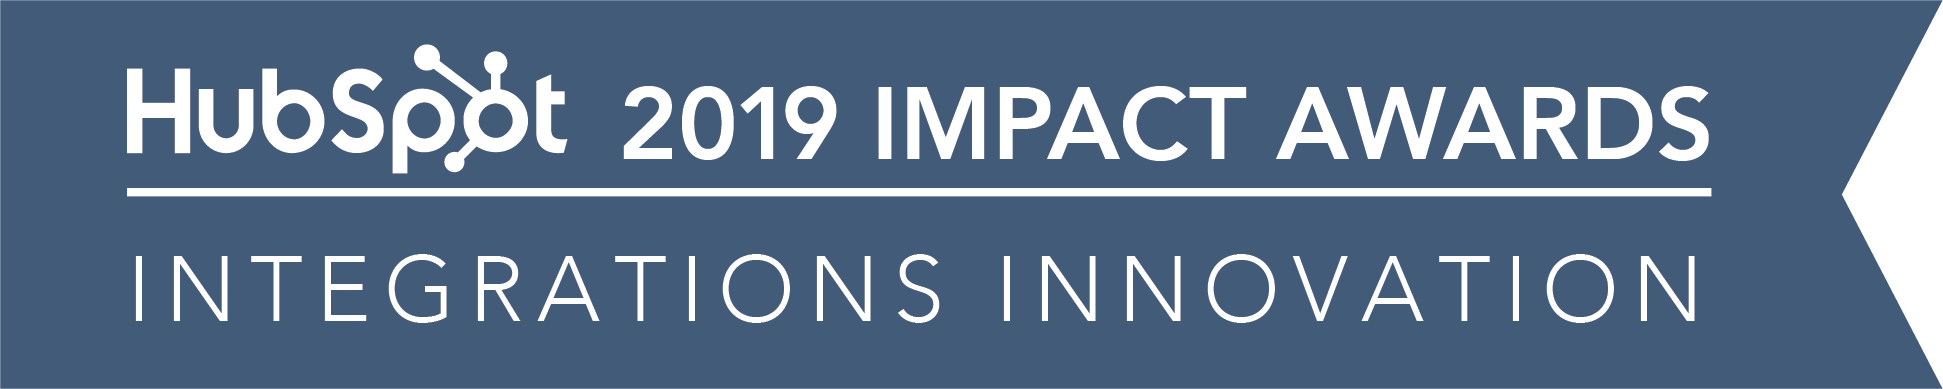 digital 22 hubspot impact award winners for integration innovation